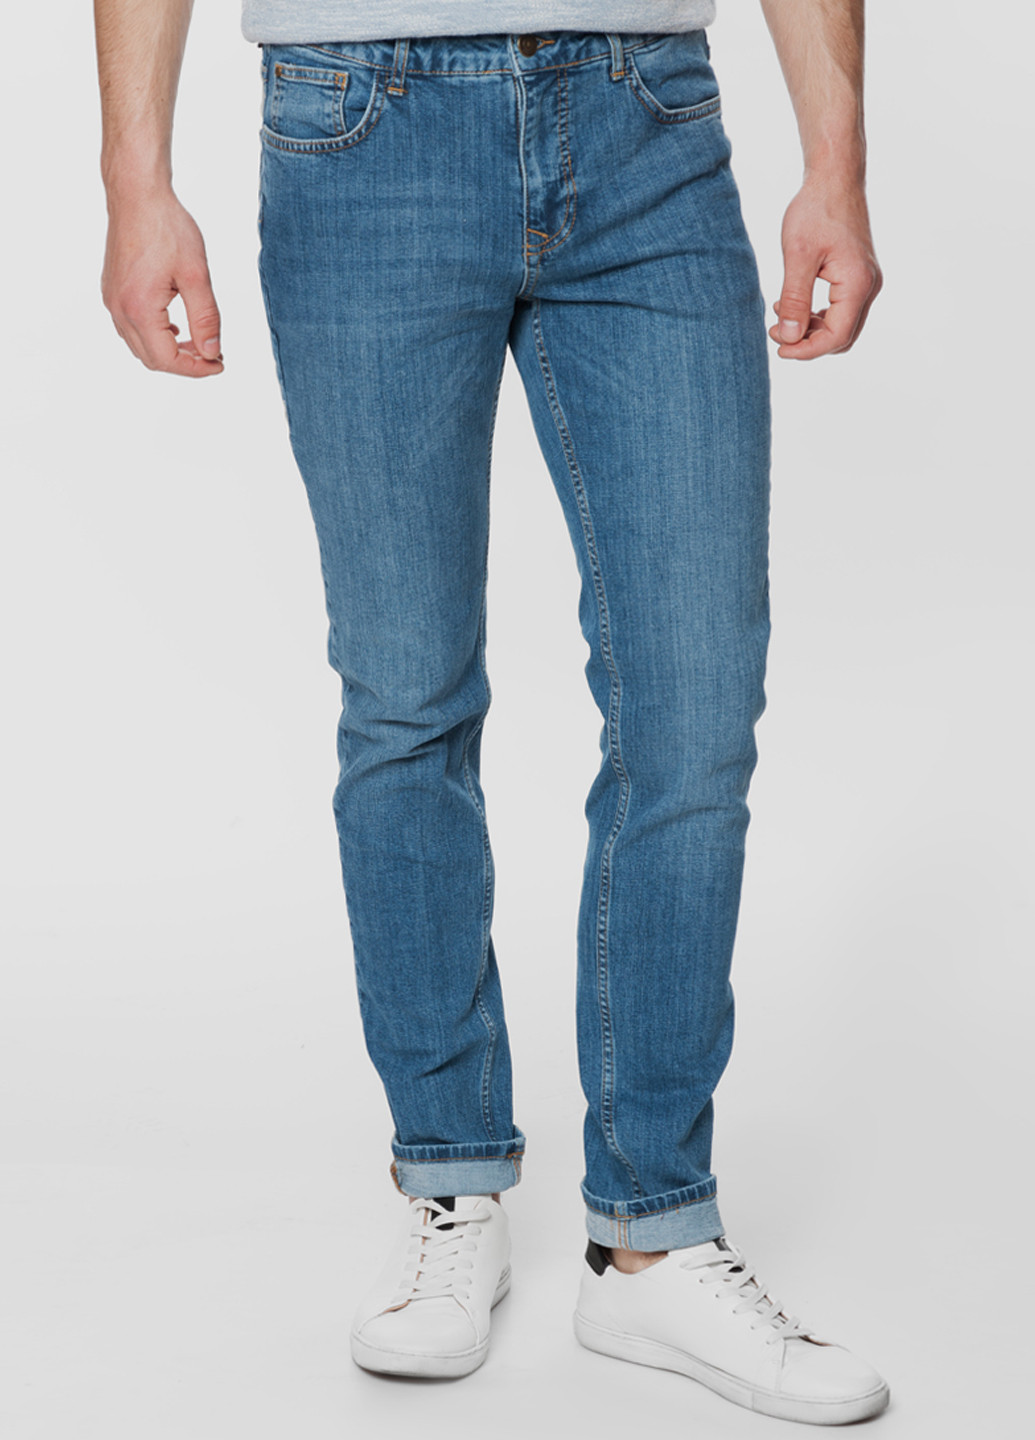 Синие демисезонные джинсы мужские Poslage 25 Arber